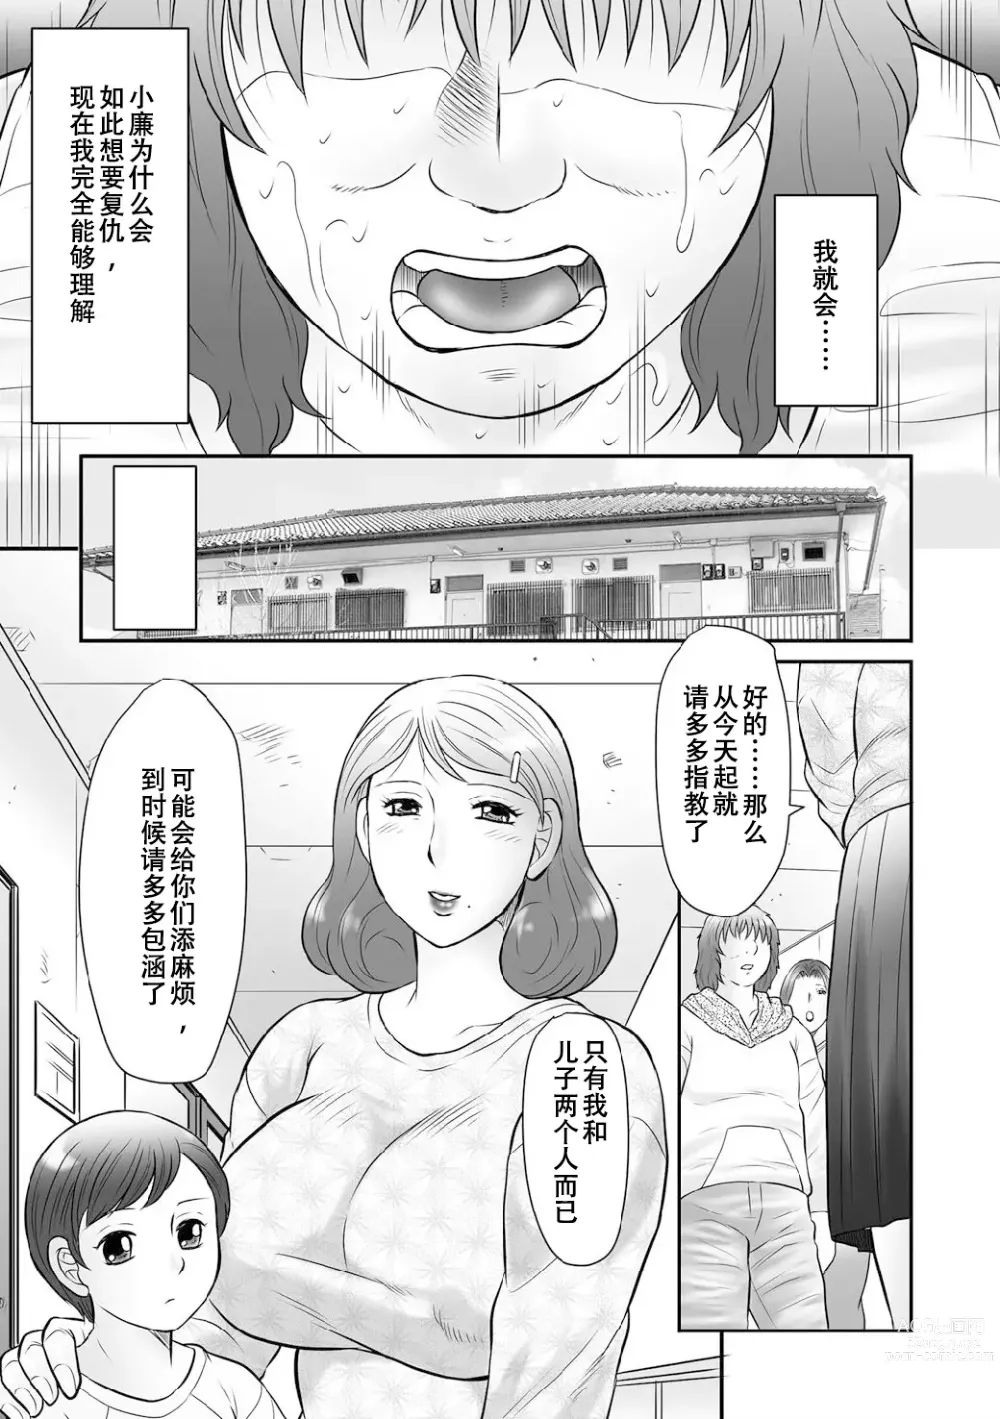 Page 8 of manga Haha Kangoku INFINITY